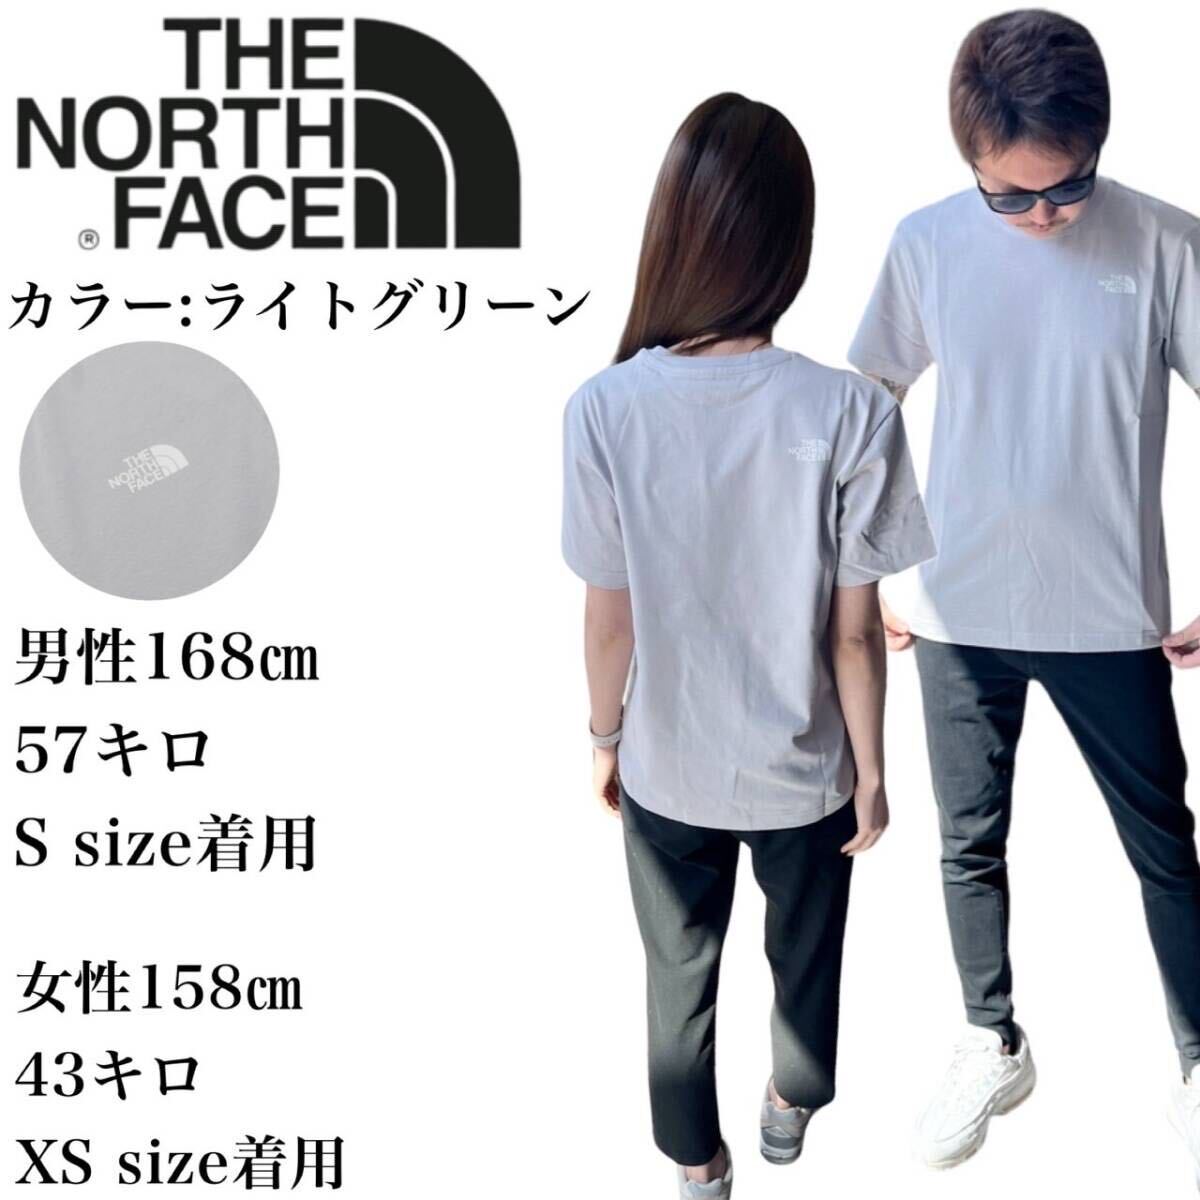 ザ ノースフェイス Tシャツ NT7U ライトグレー XSサイズ コットン素材 クルーネック シンプルロゴ THE NORTH FACE COTTON S/S TEE 新品の画像2